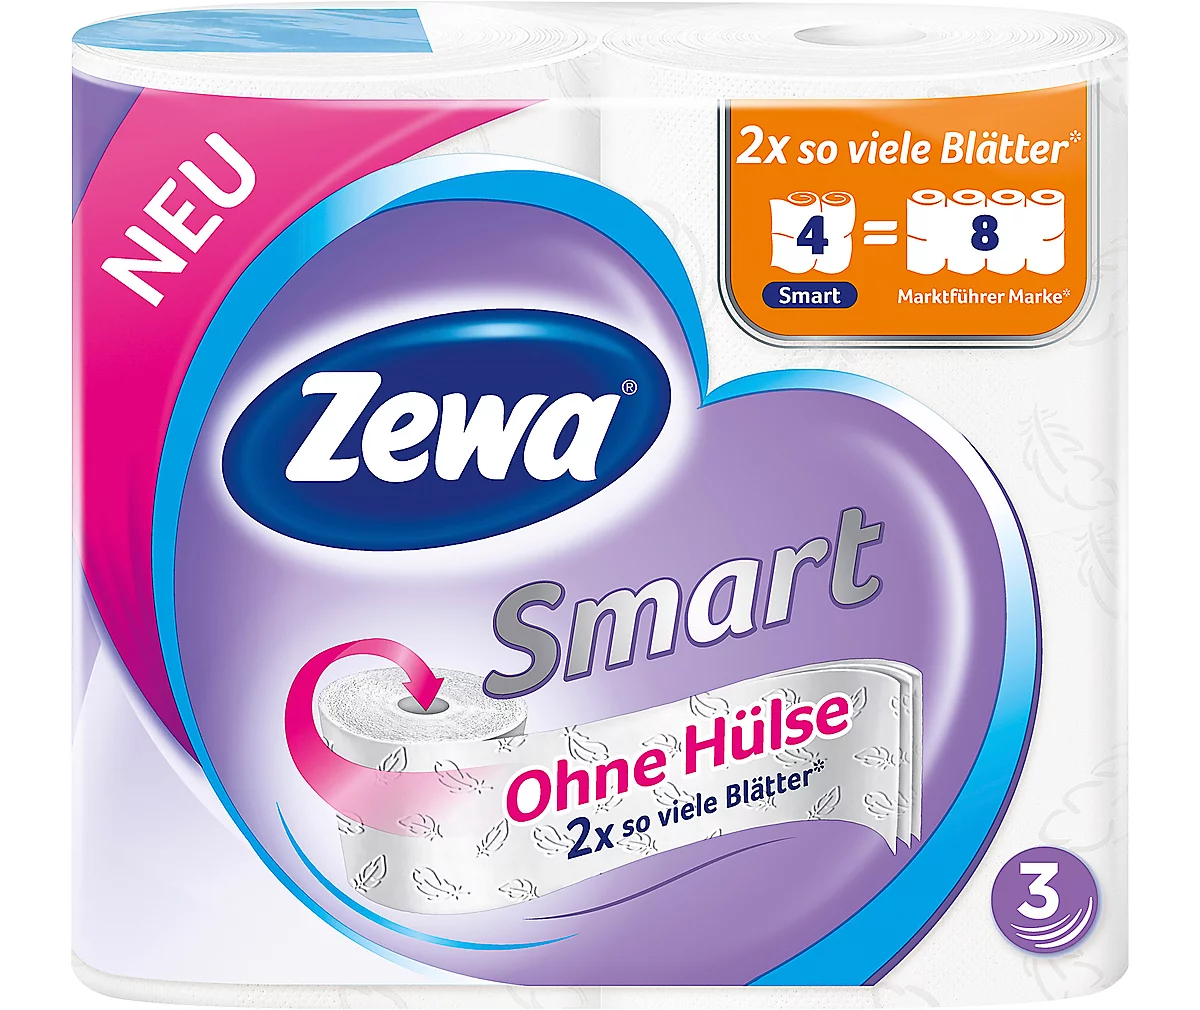 Toilettenpapier Zewa Smart, weiß, 3-lagig, 300 Blatt pro Rolle, 4 Rollen